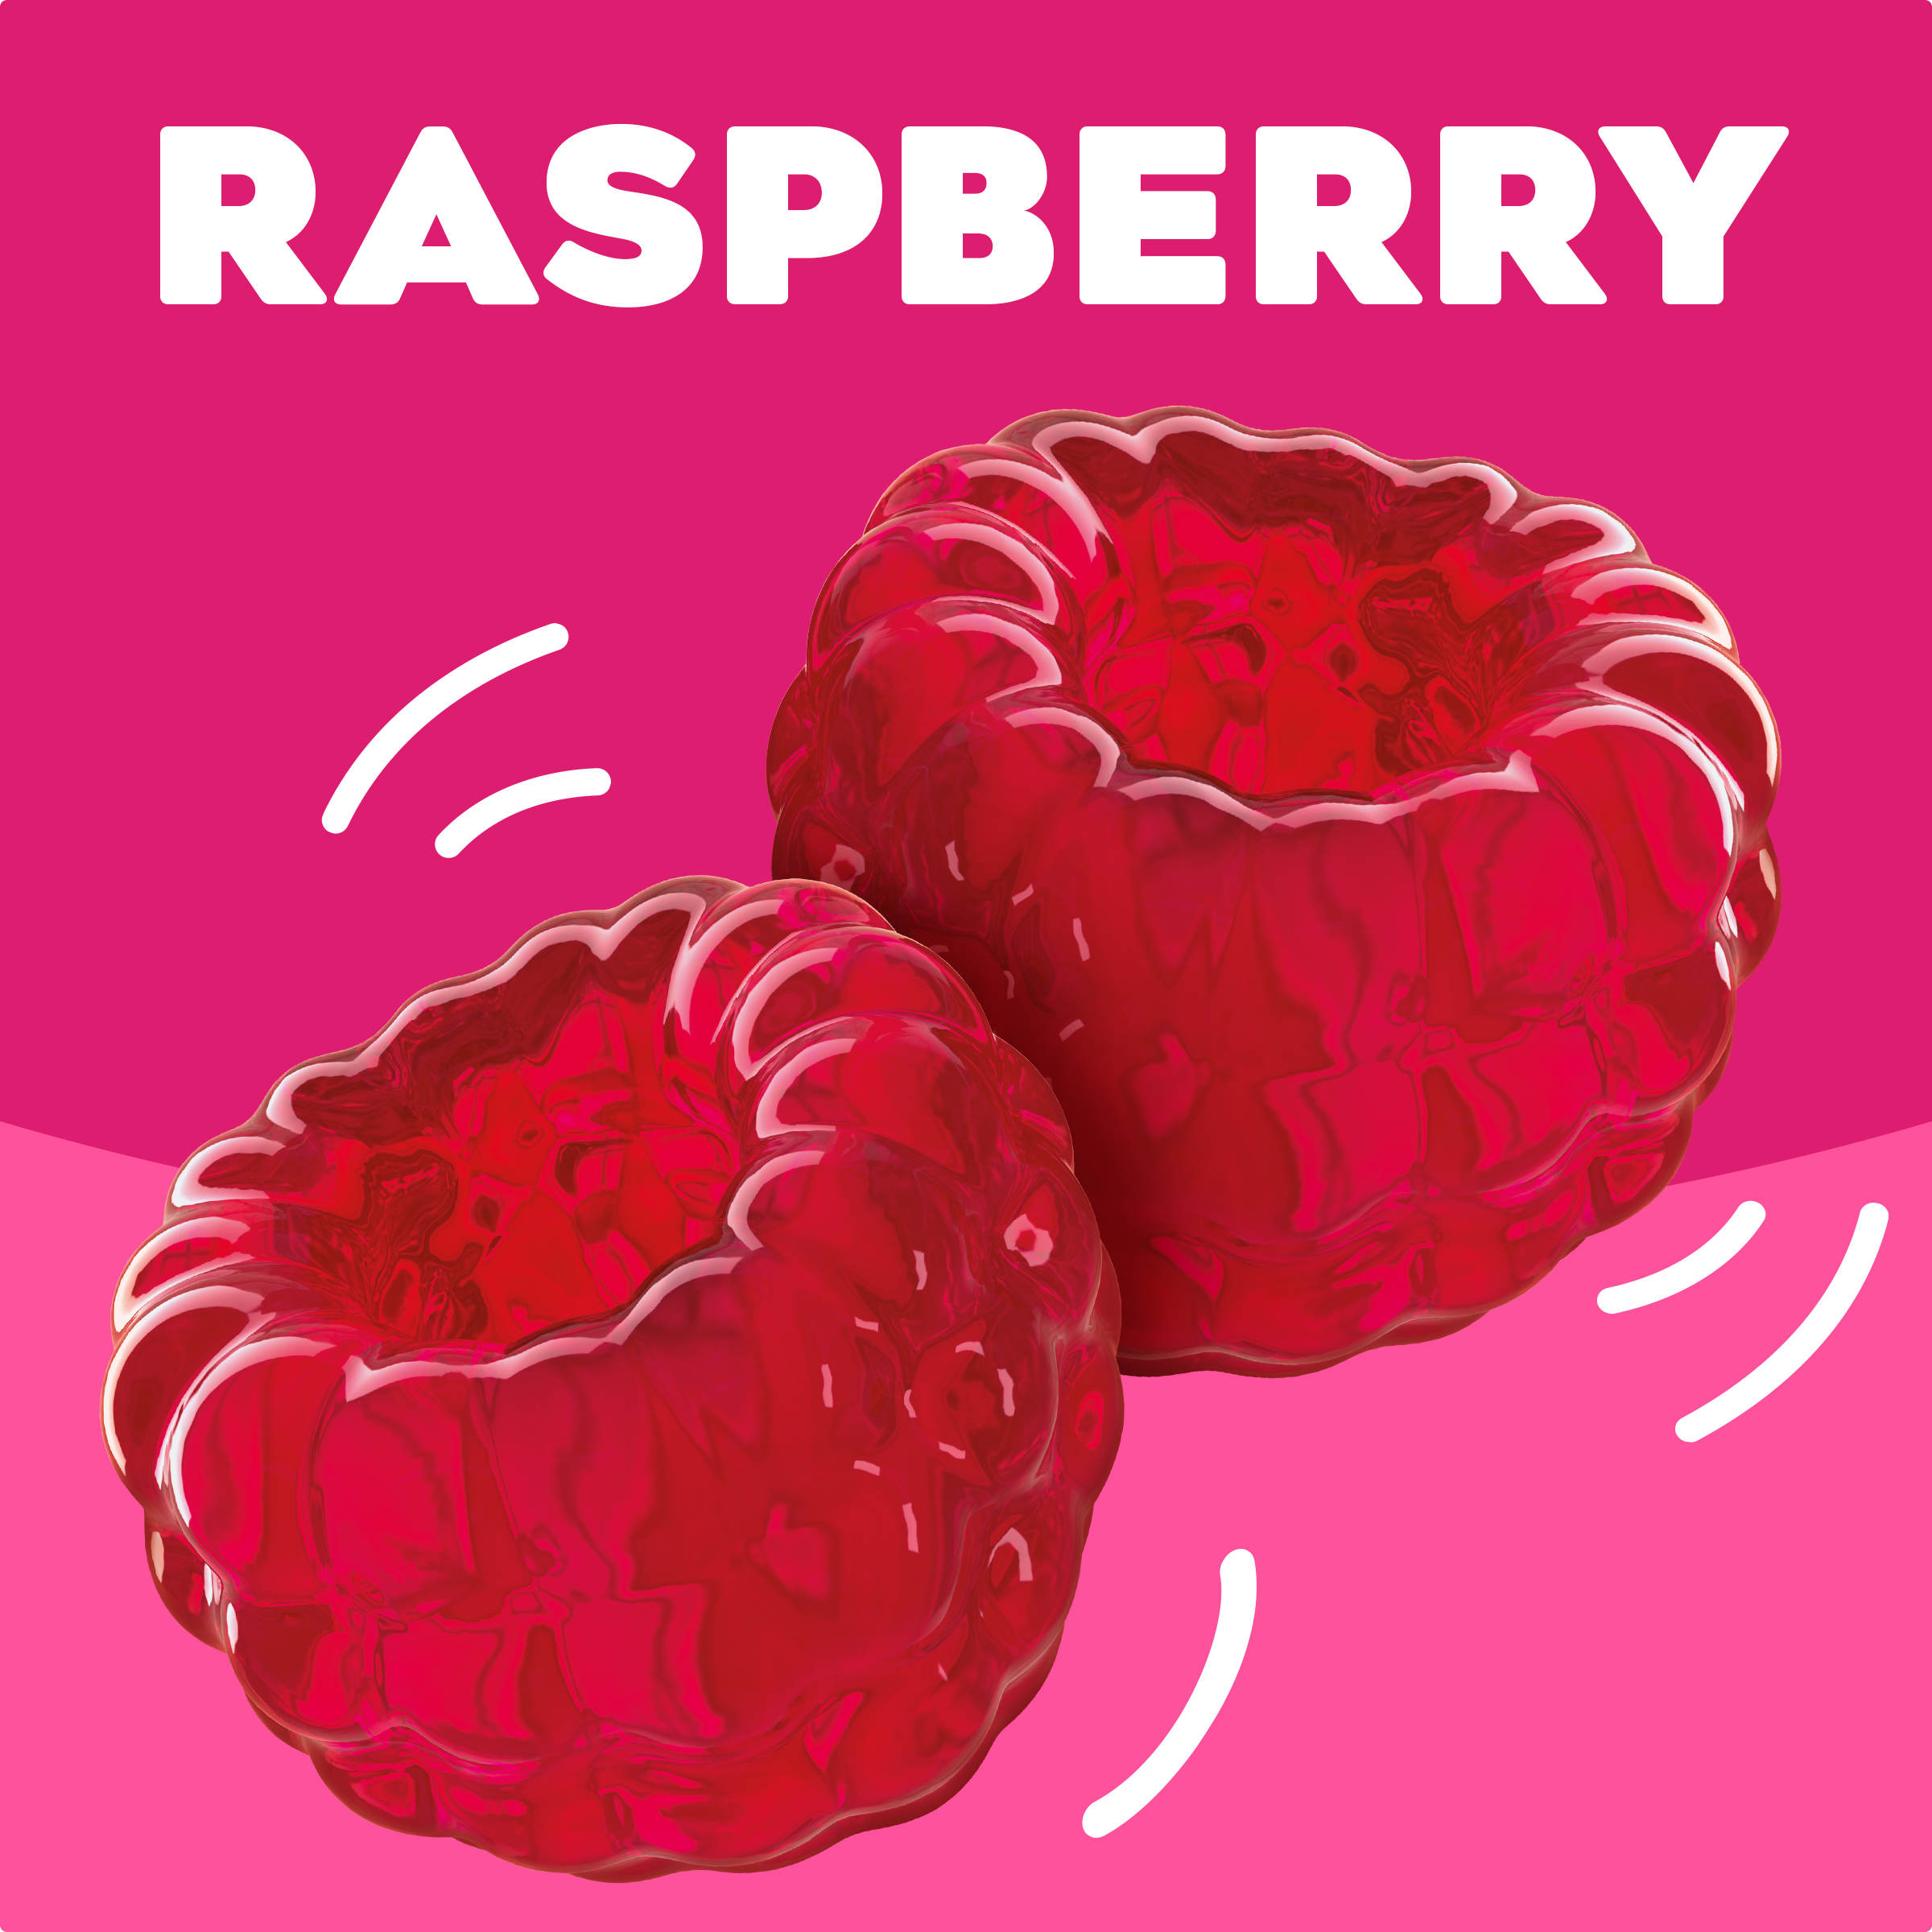 Raspberry Gelatin Dessert Mix